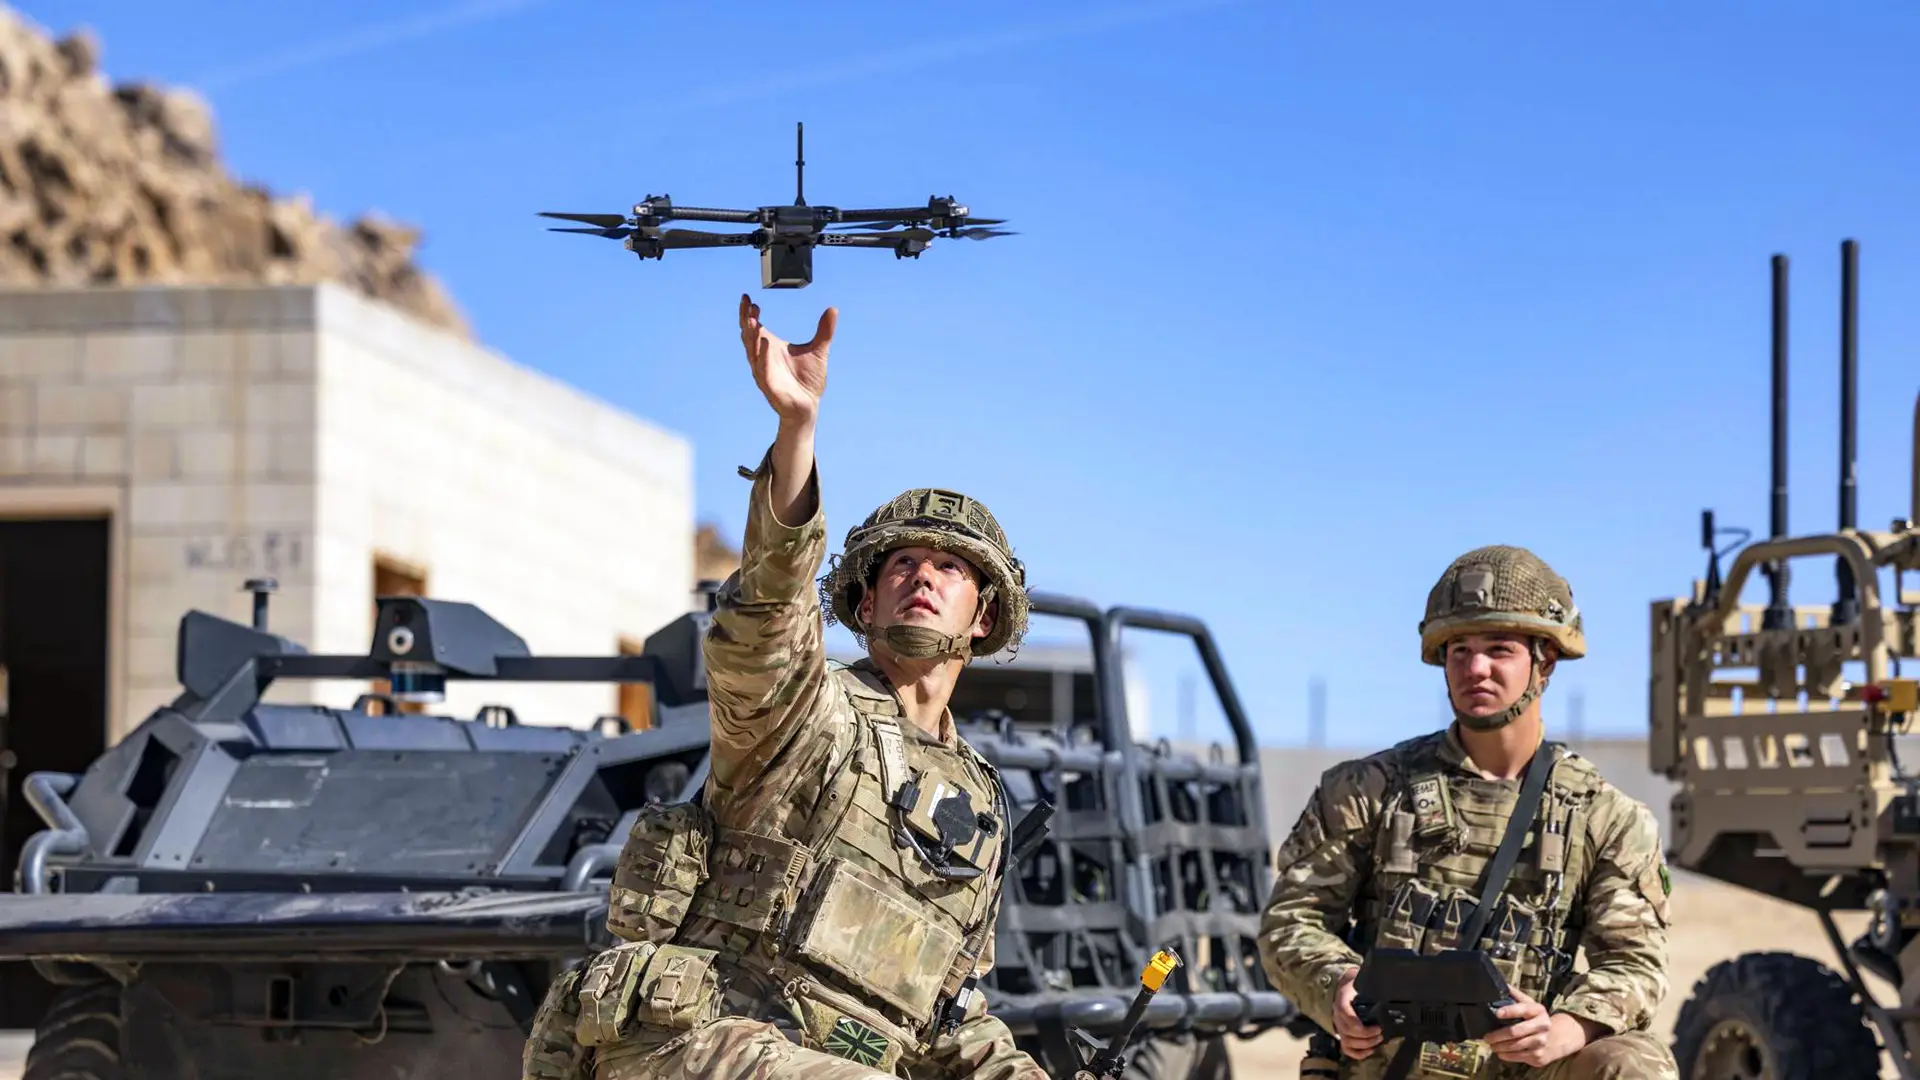 L'esercito americano ha un nuovo drone RQ-28A basato sullo Skydio X2D.